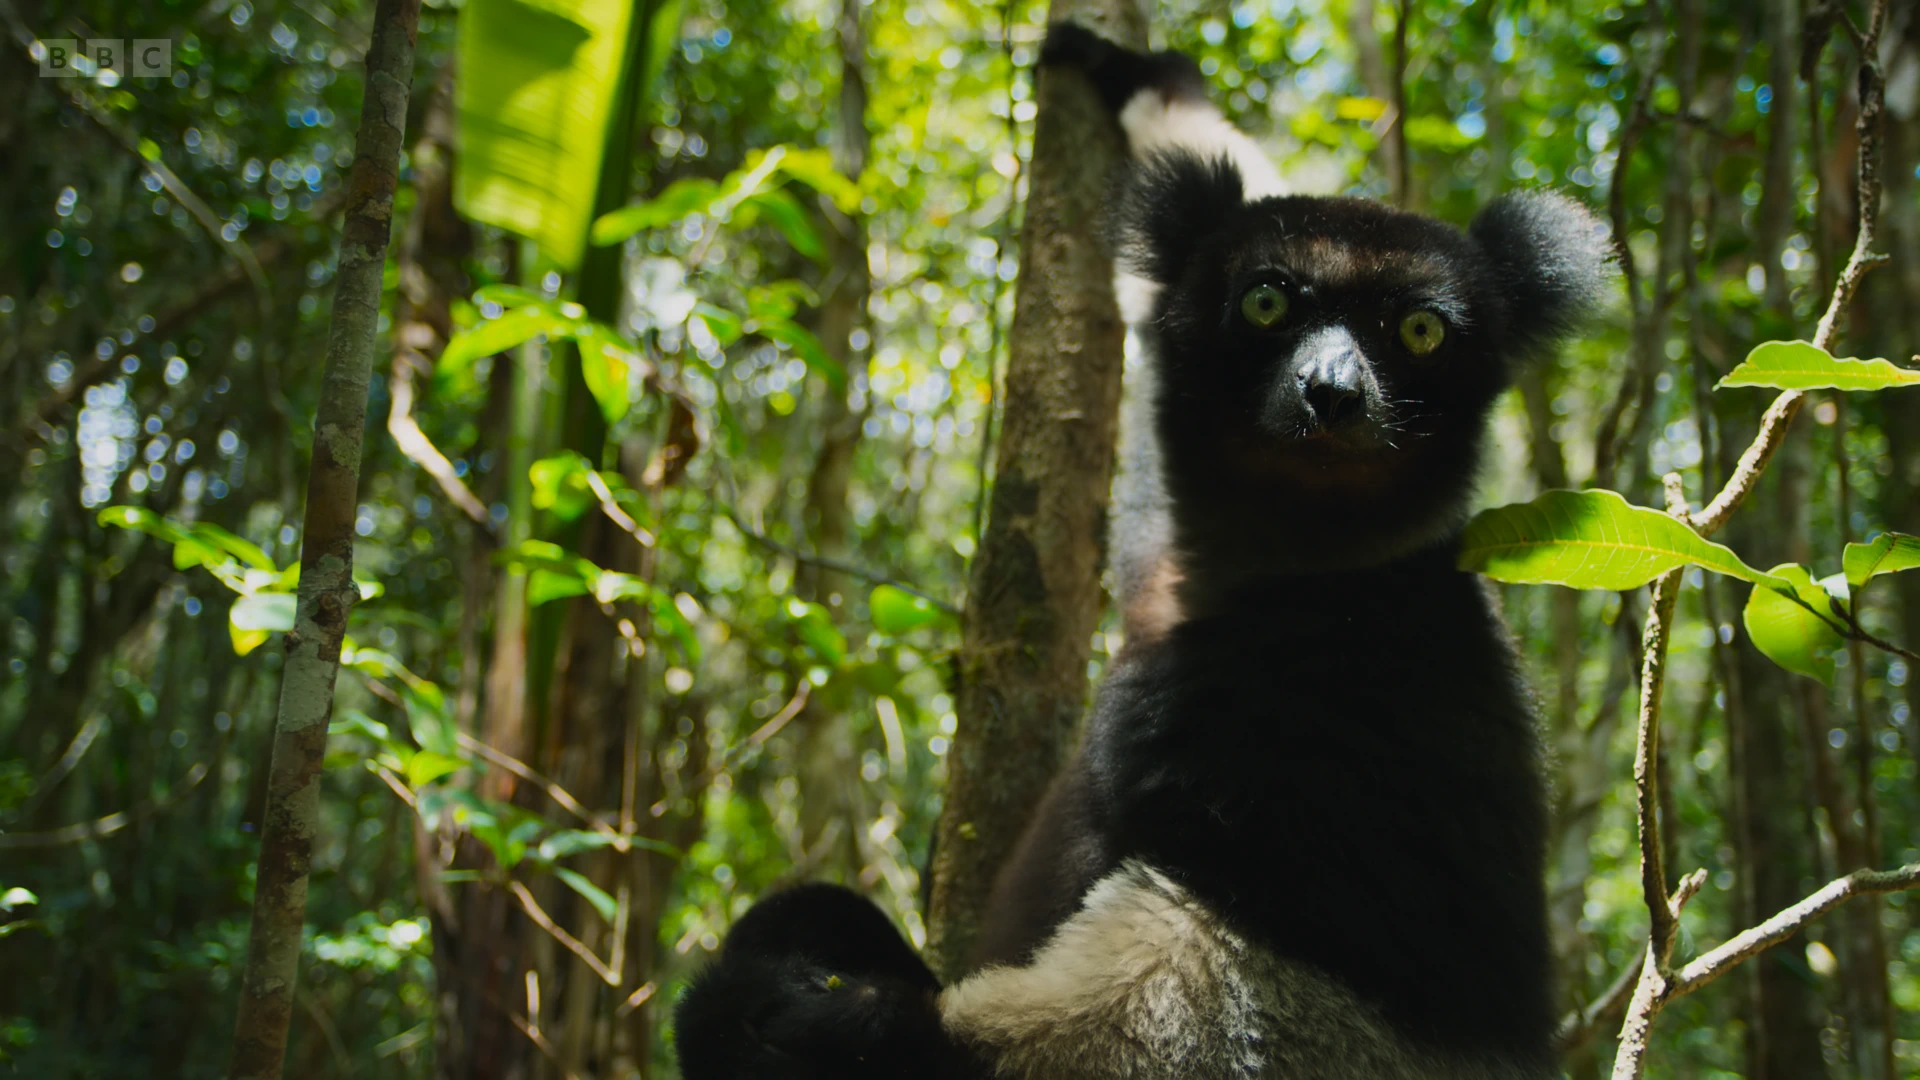 Indri (Indri indri) as shown in Planet Earth II - Jungles